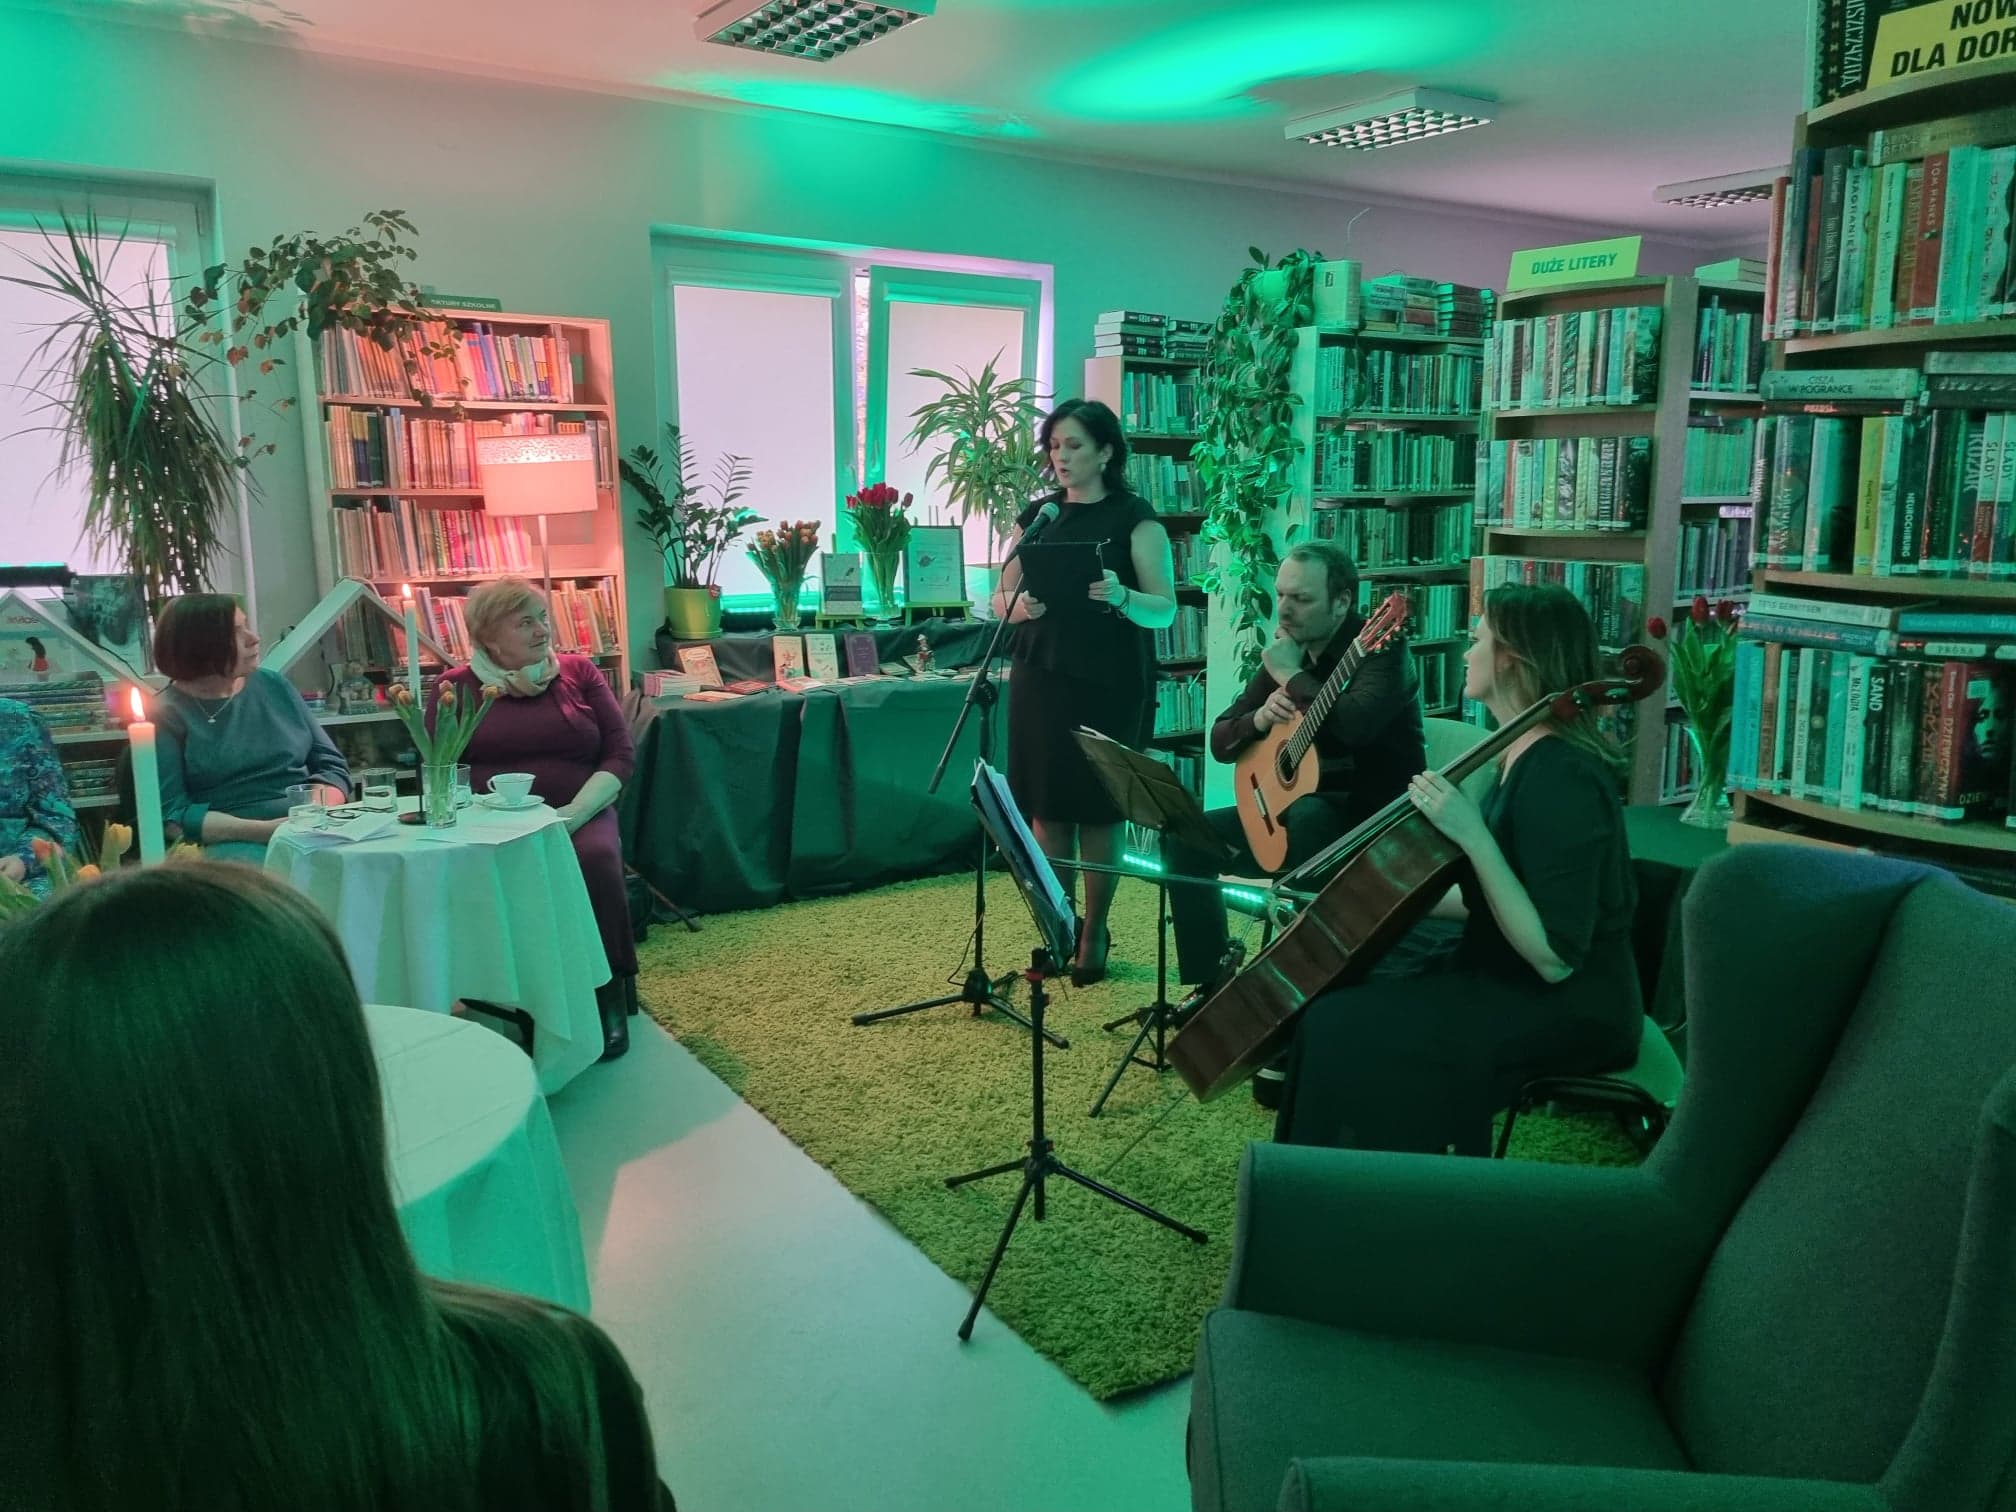 Wieczór poetycko-muzyczny w bibliotece w Wiązownie. Dyrektor biblioteki Marzena Kopka deklamuje wiersz. Z boku siedzi mężczyzna z gitarą na kolanie i kobieta trzymajaca wiolonczelę. W tle regały z książkami.